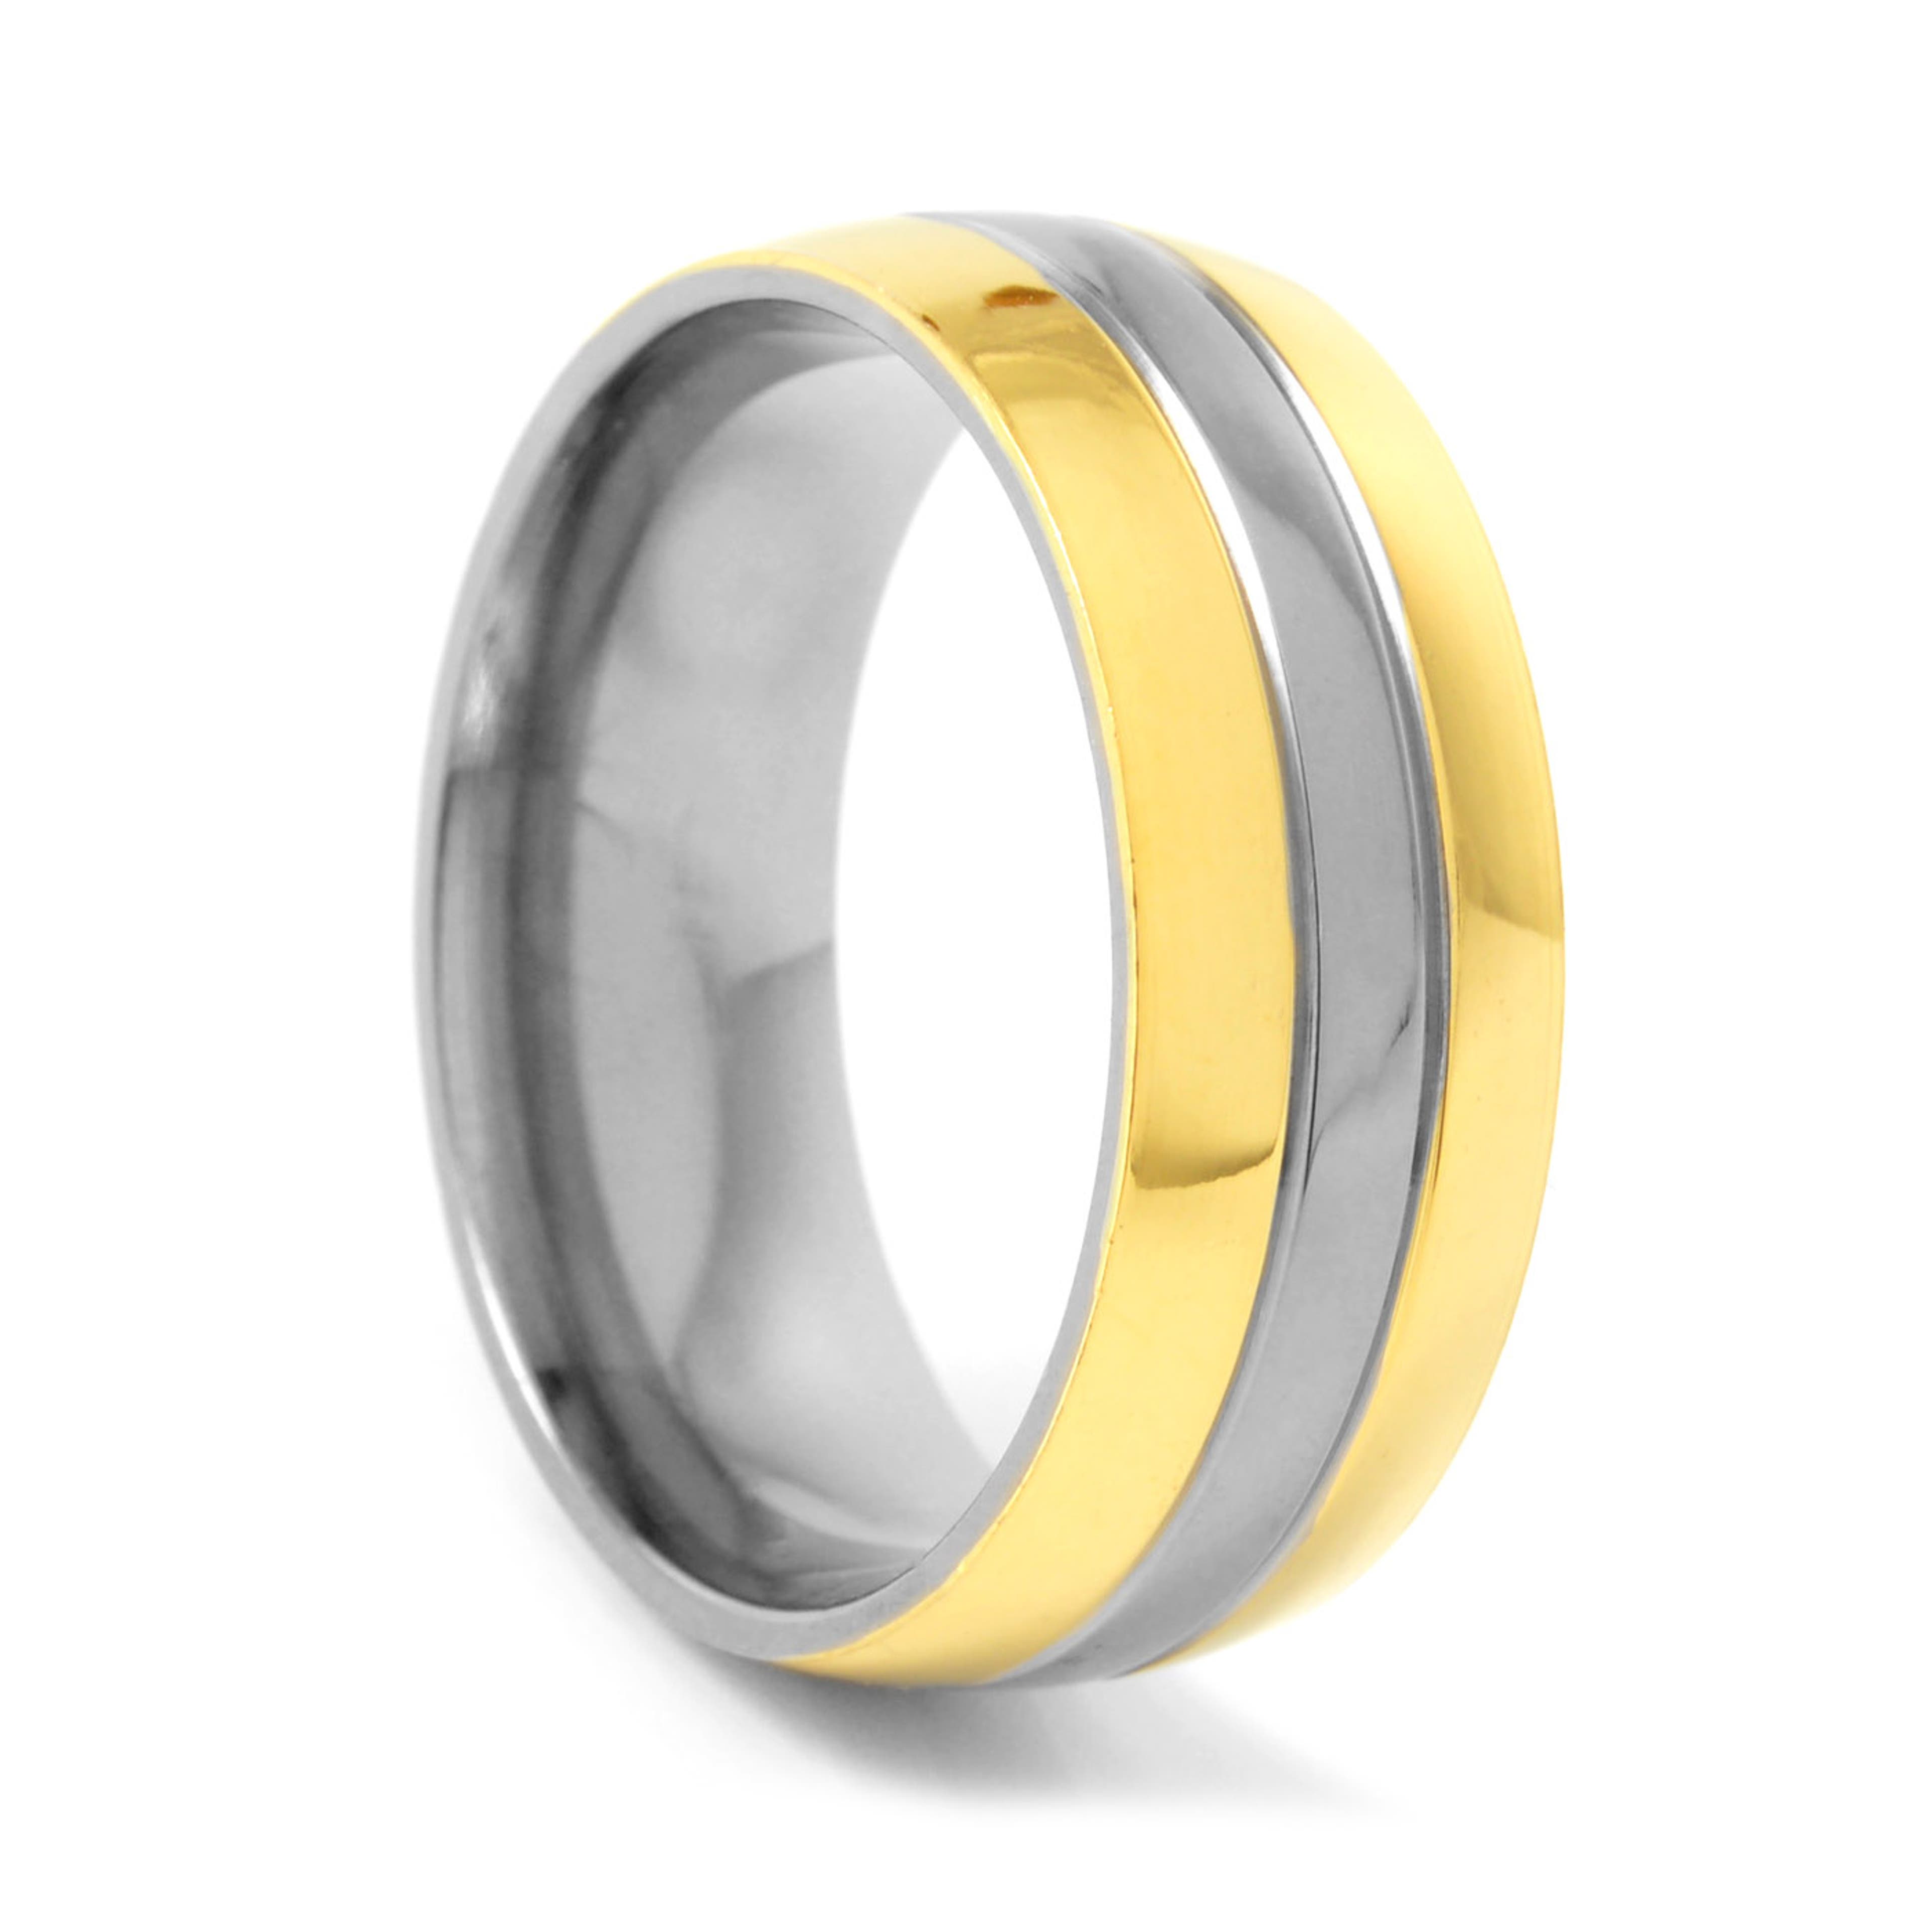 Класически сребристо-златист пръстен от титан